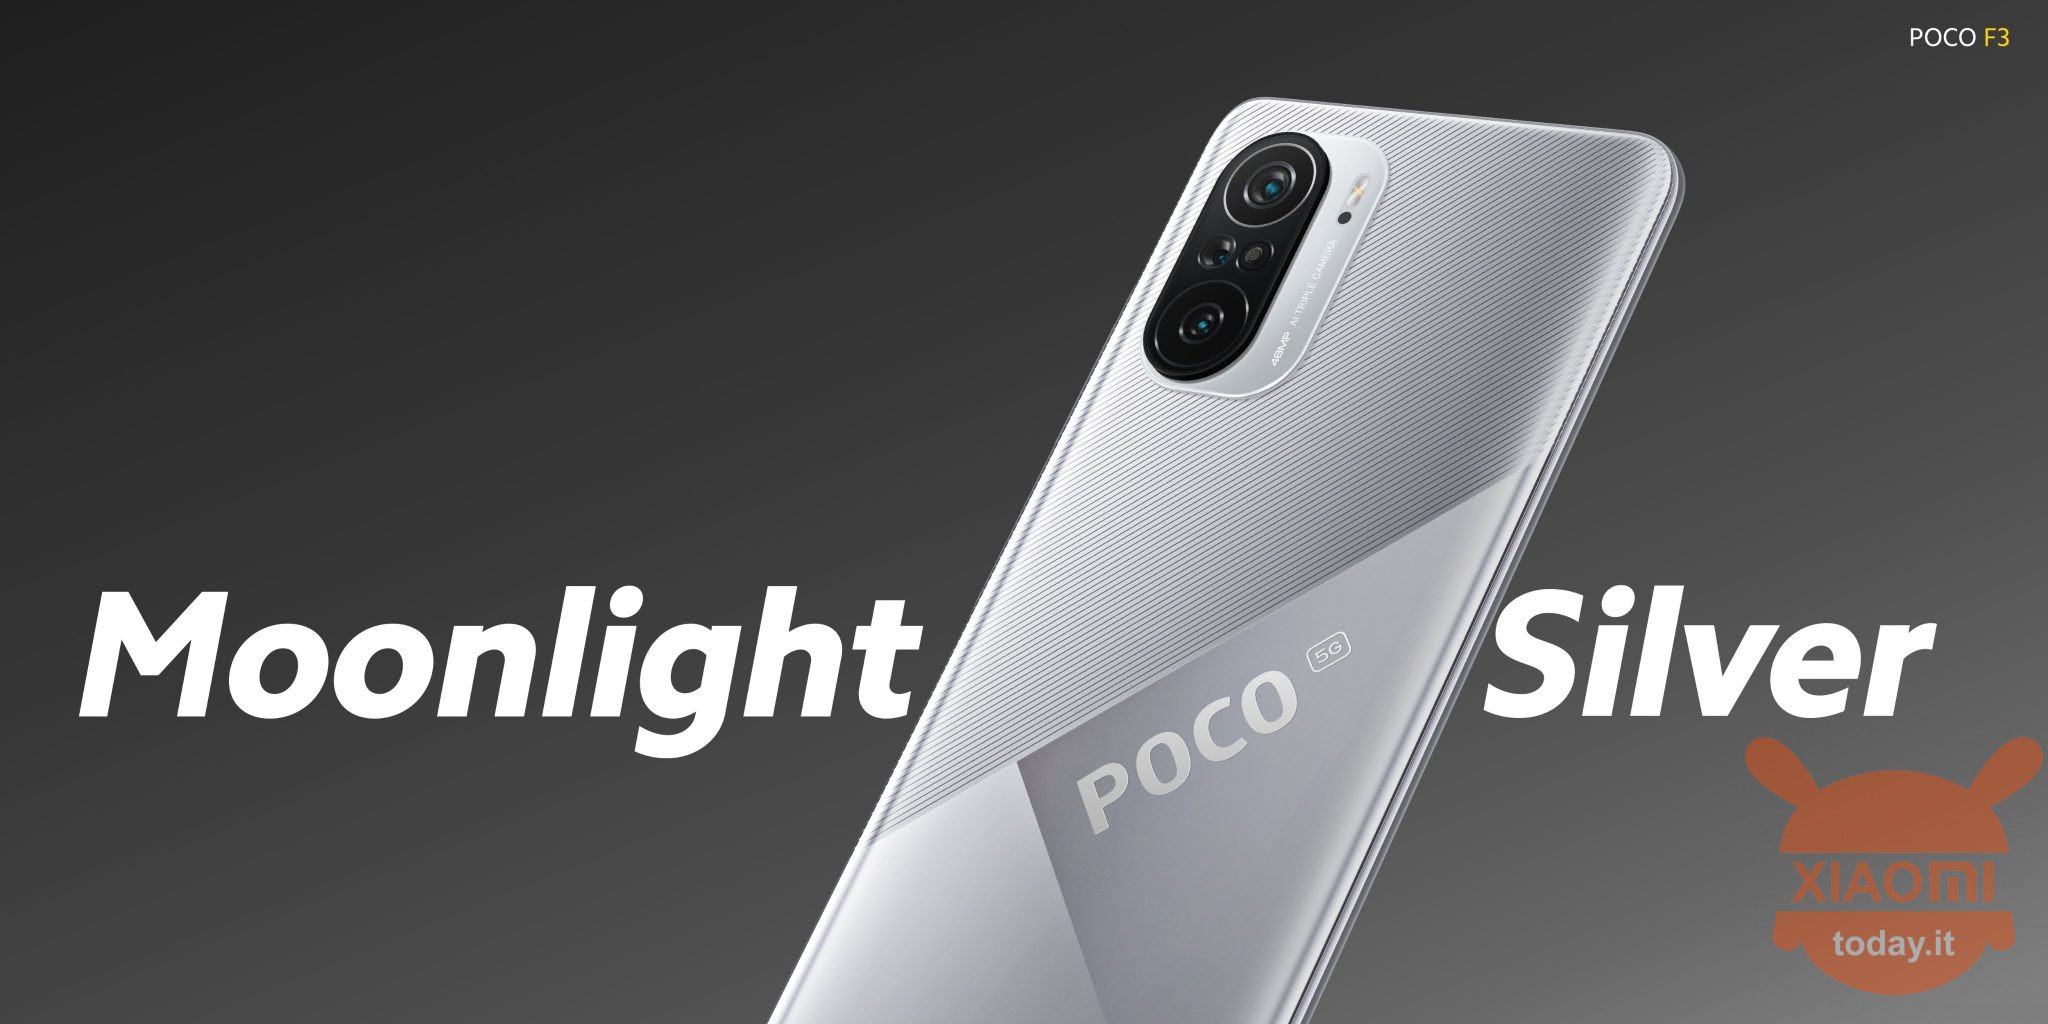 POCO F3 annunciato nella nuova versione Moonlight Silver